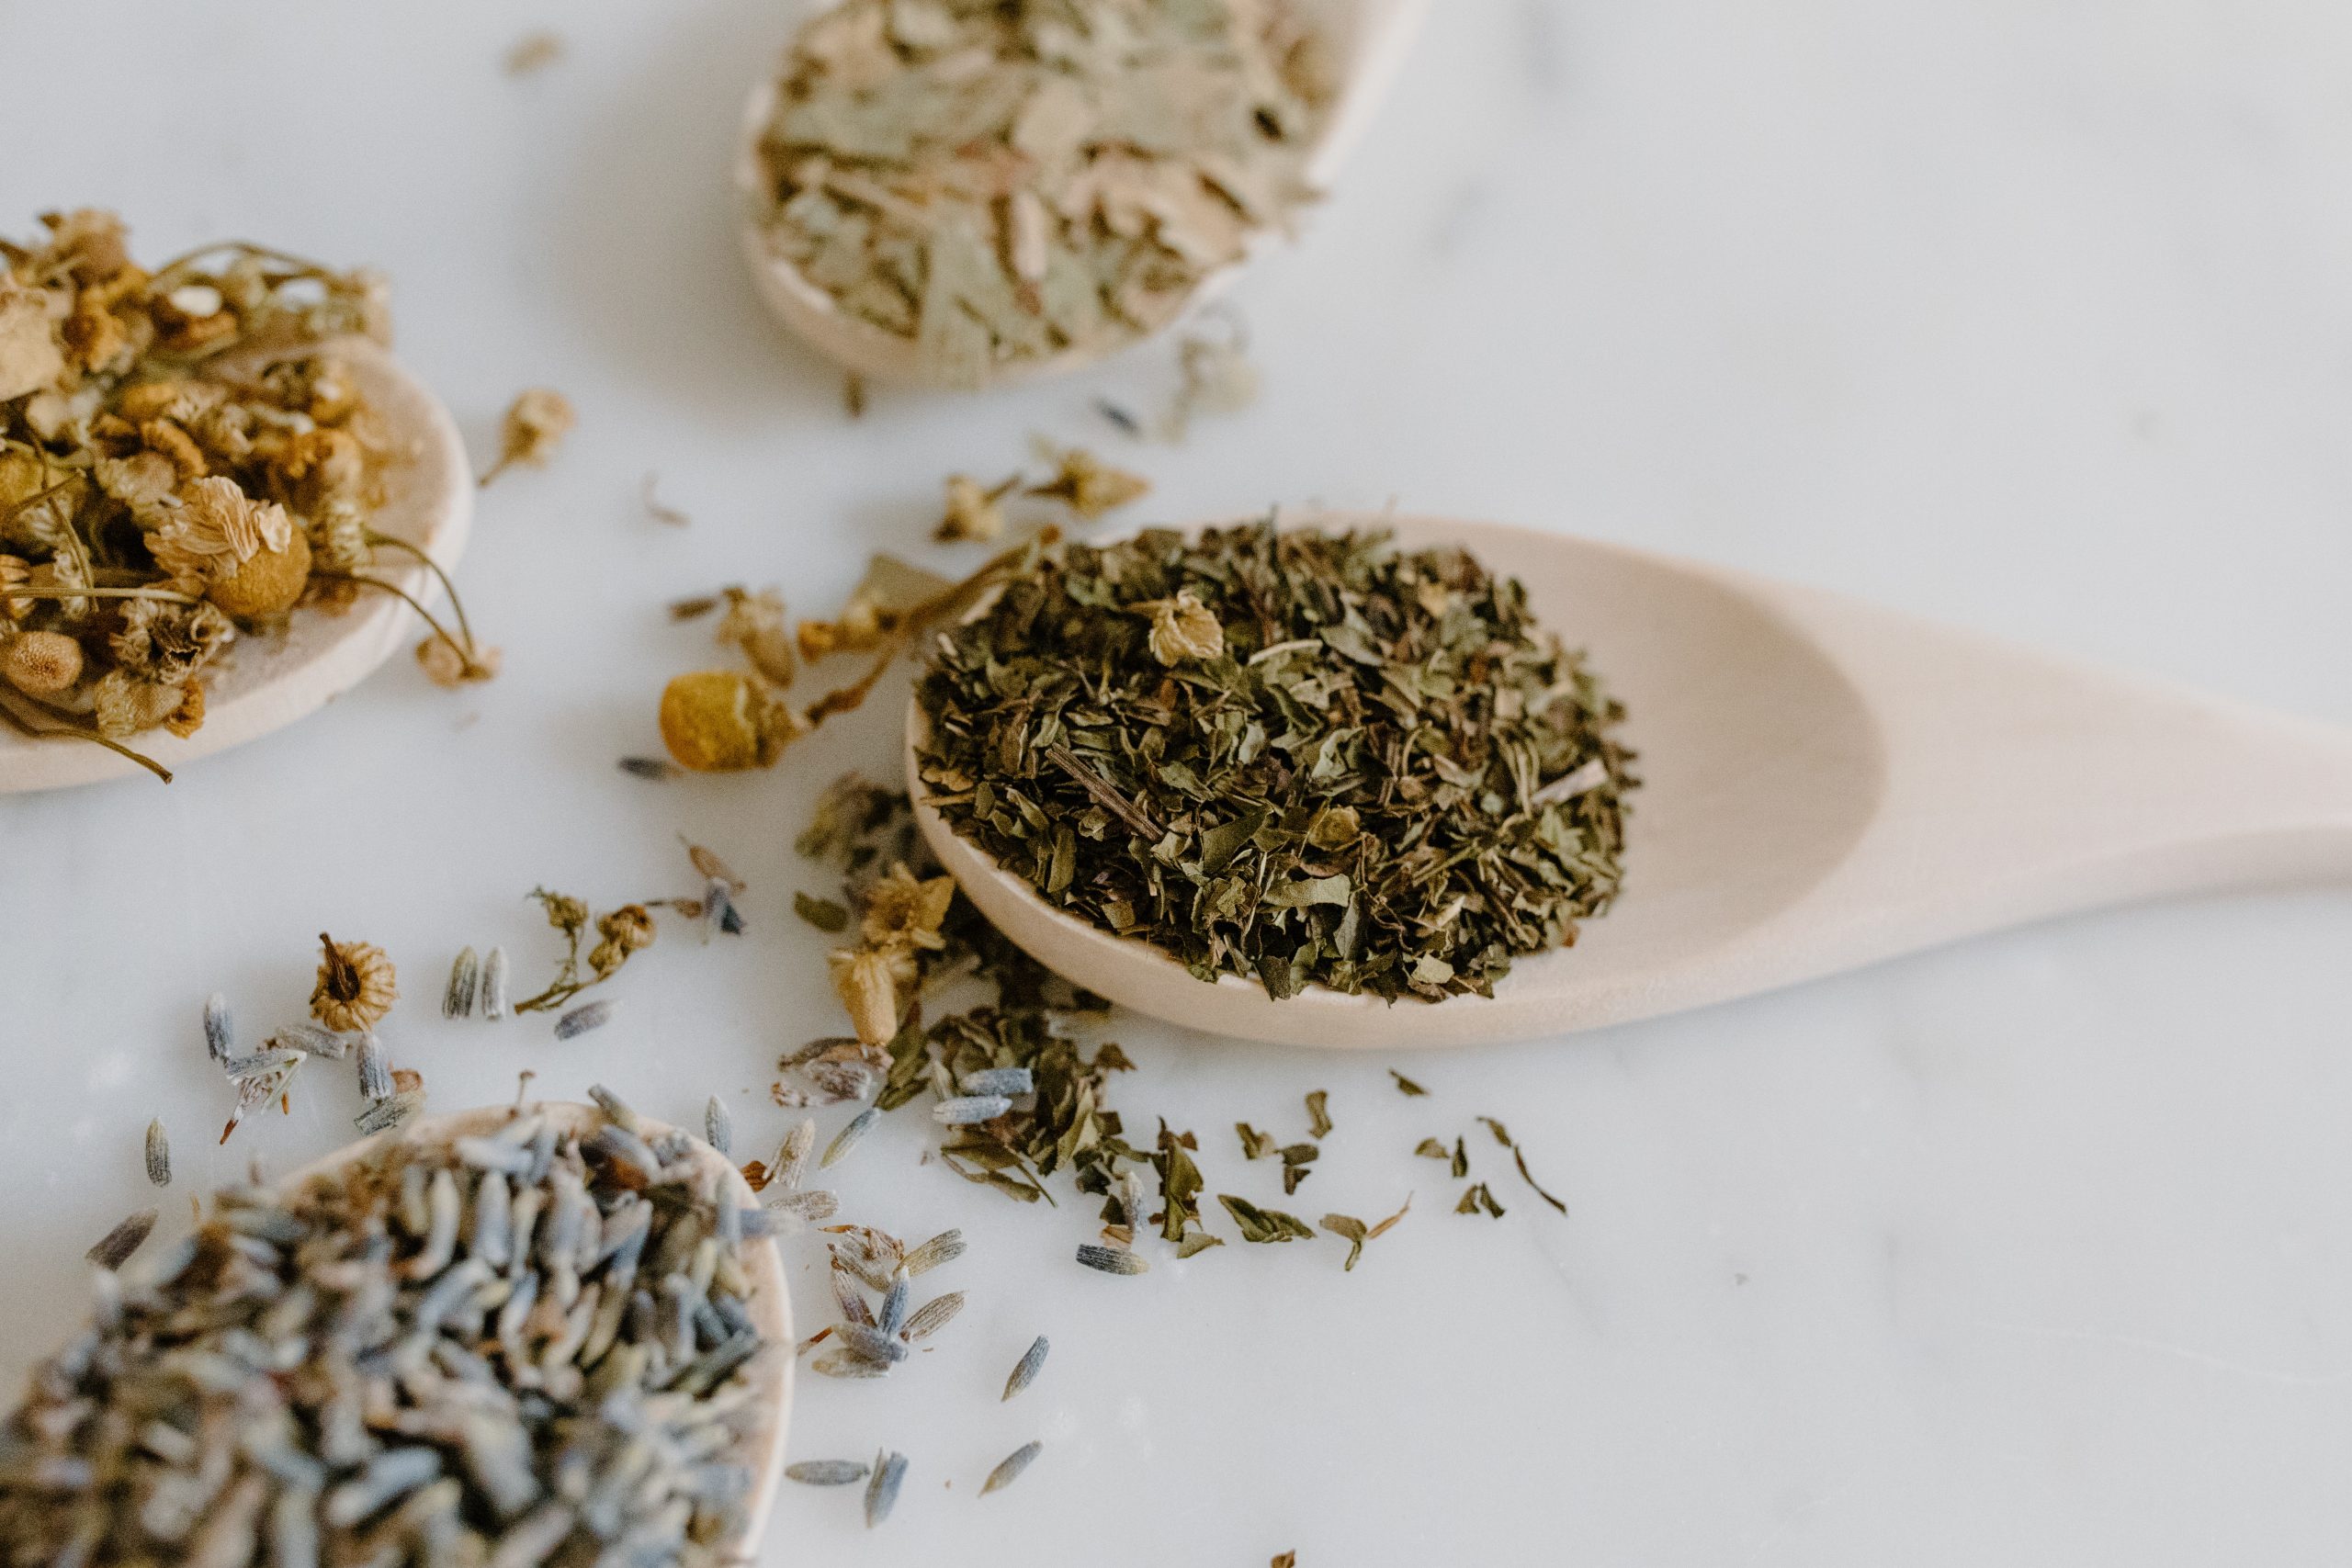 prepare herbal home remedies